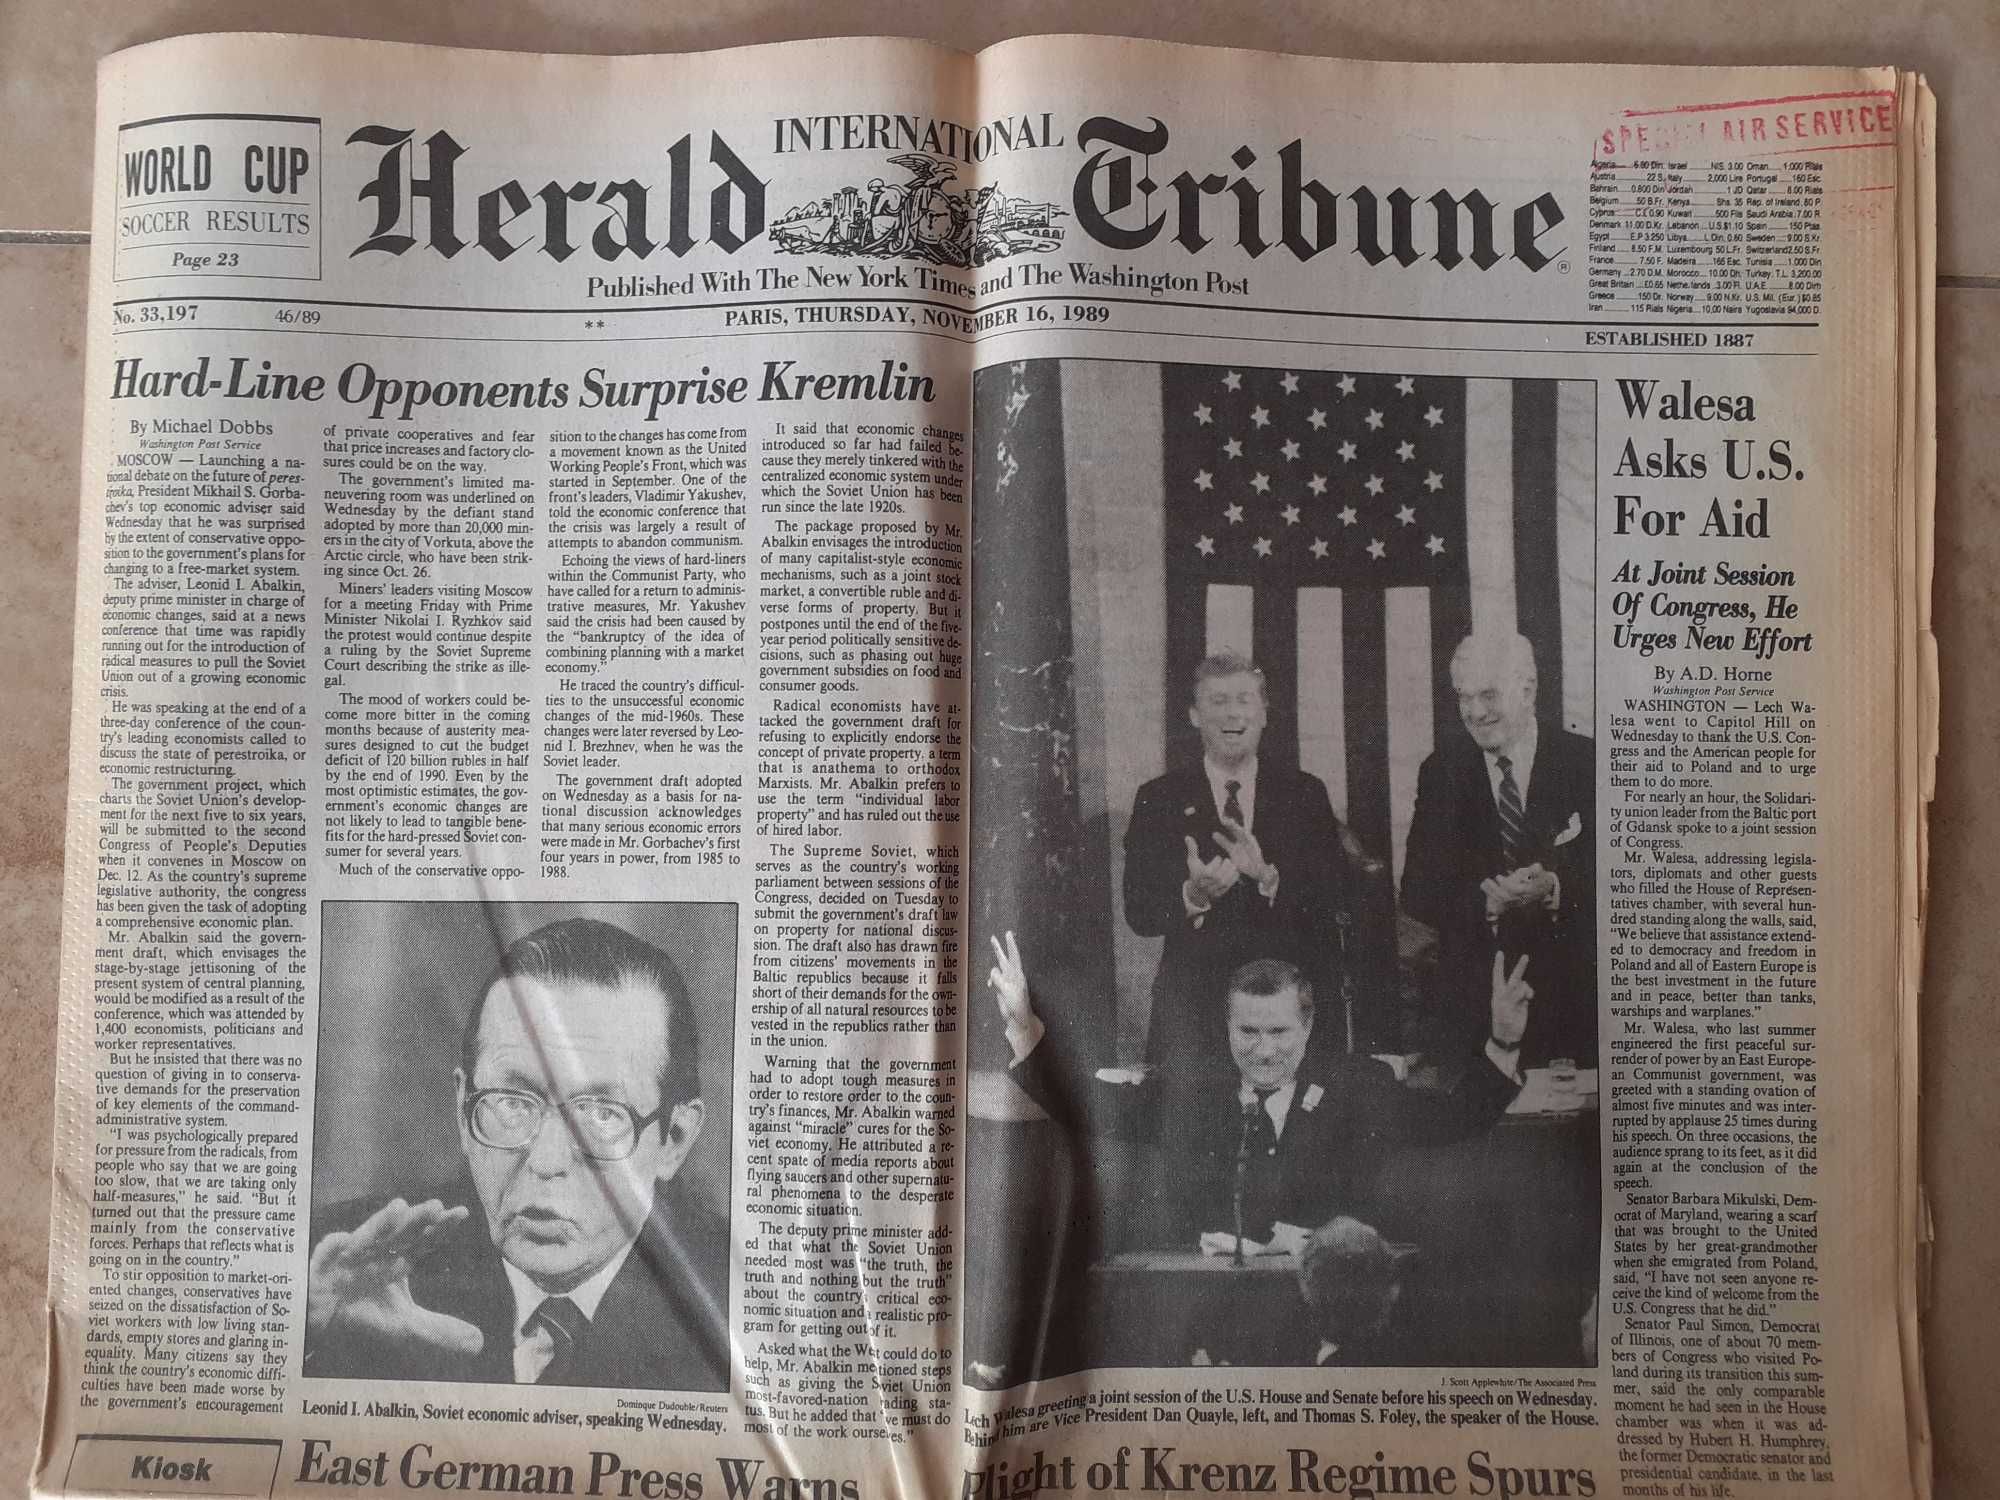 Kompletna, stara gazeta "Herald Tribune" z 16.11.1989r.